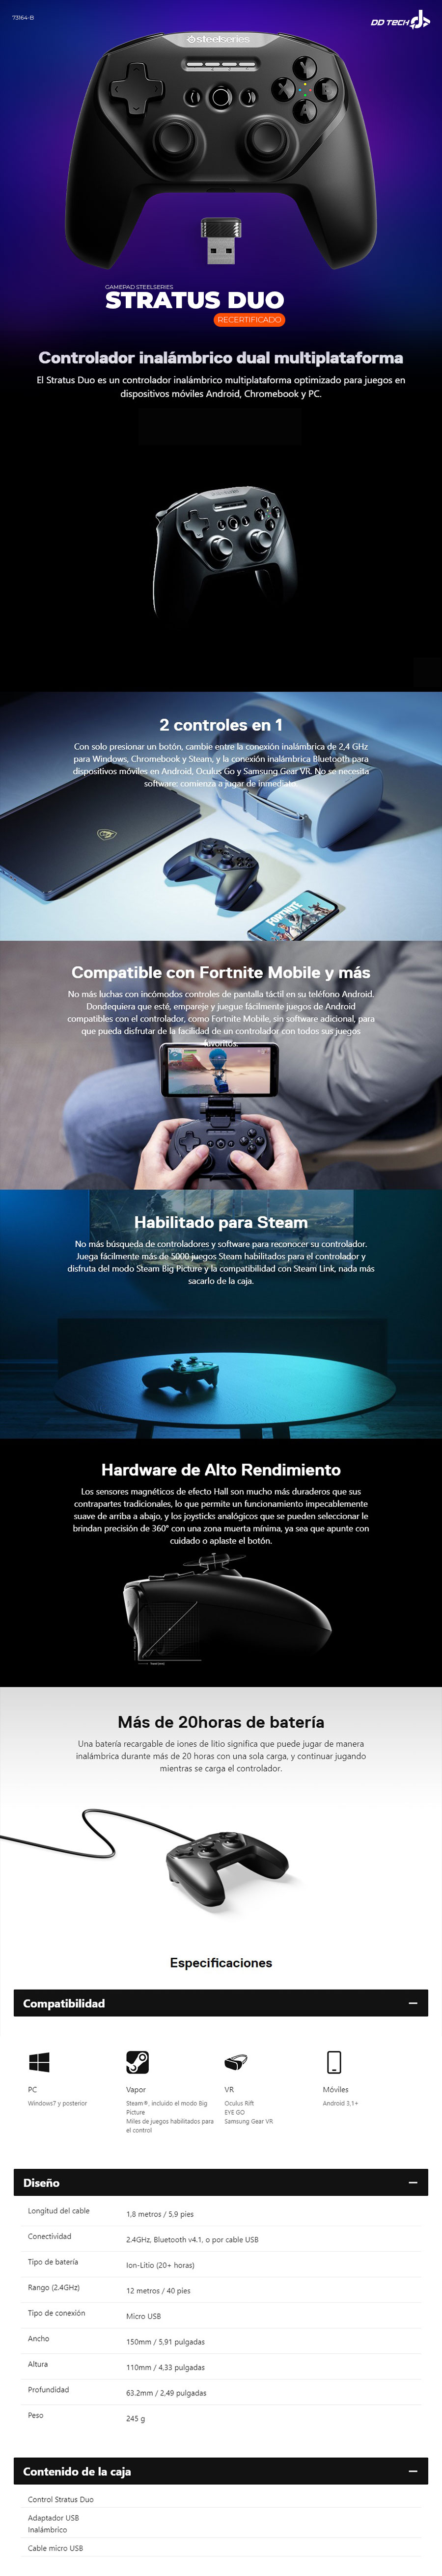 Stratus+, mando bluetooth de SteelSeries para jugar en móviles